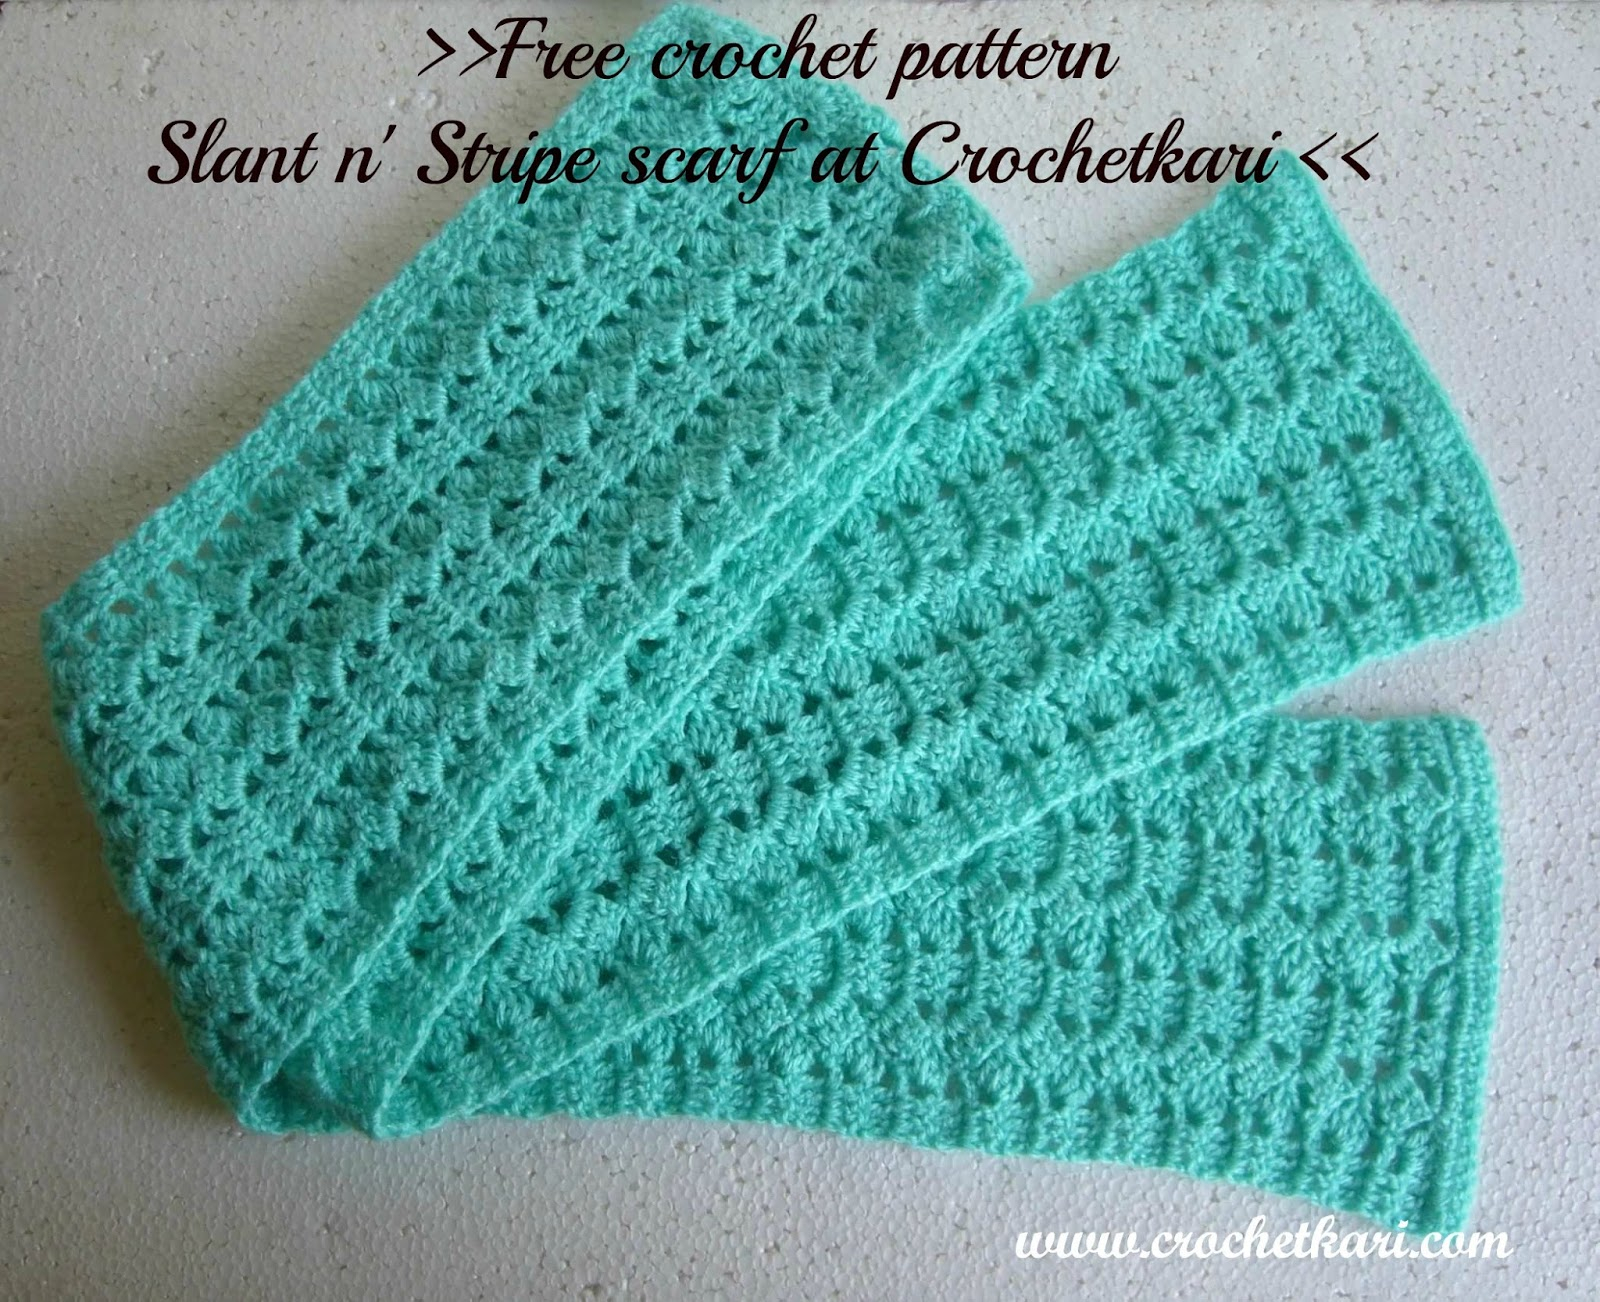 Crochet Scarf Pattern Free Crochetkari Free Crochet Pattern Slant N Stripe Scarf